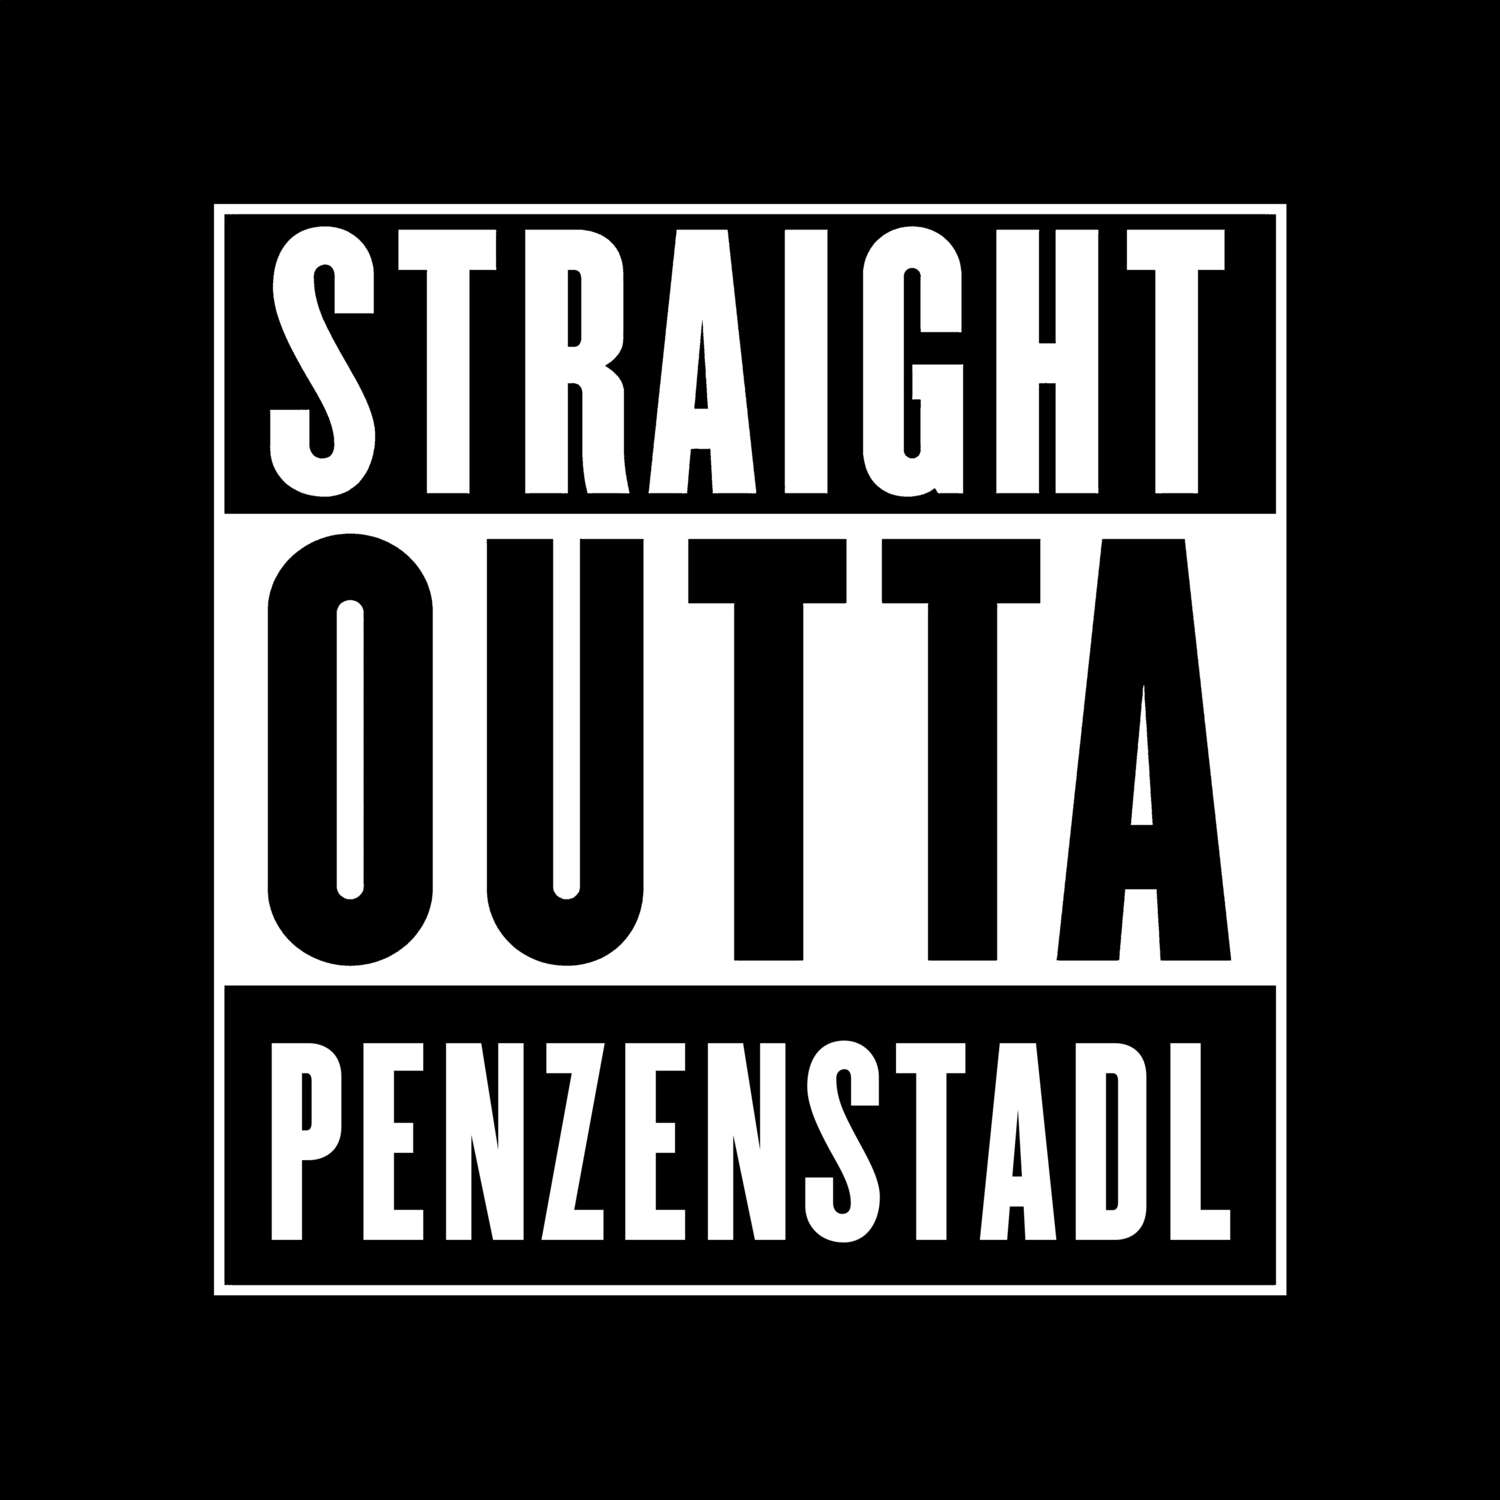 Penzenstadl T-Shirt »Straight Outta«